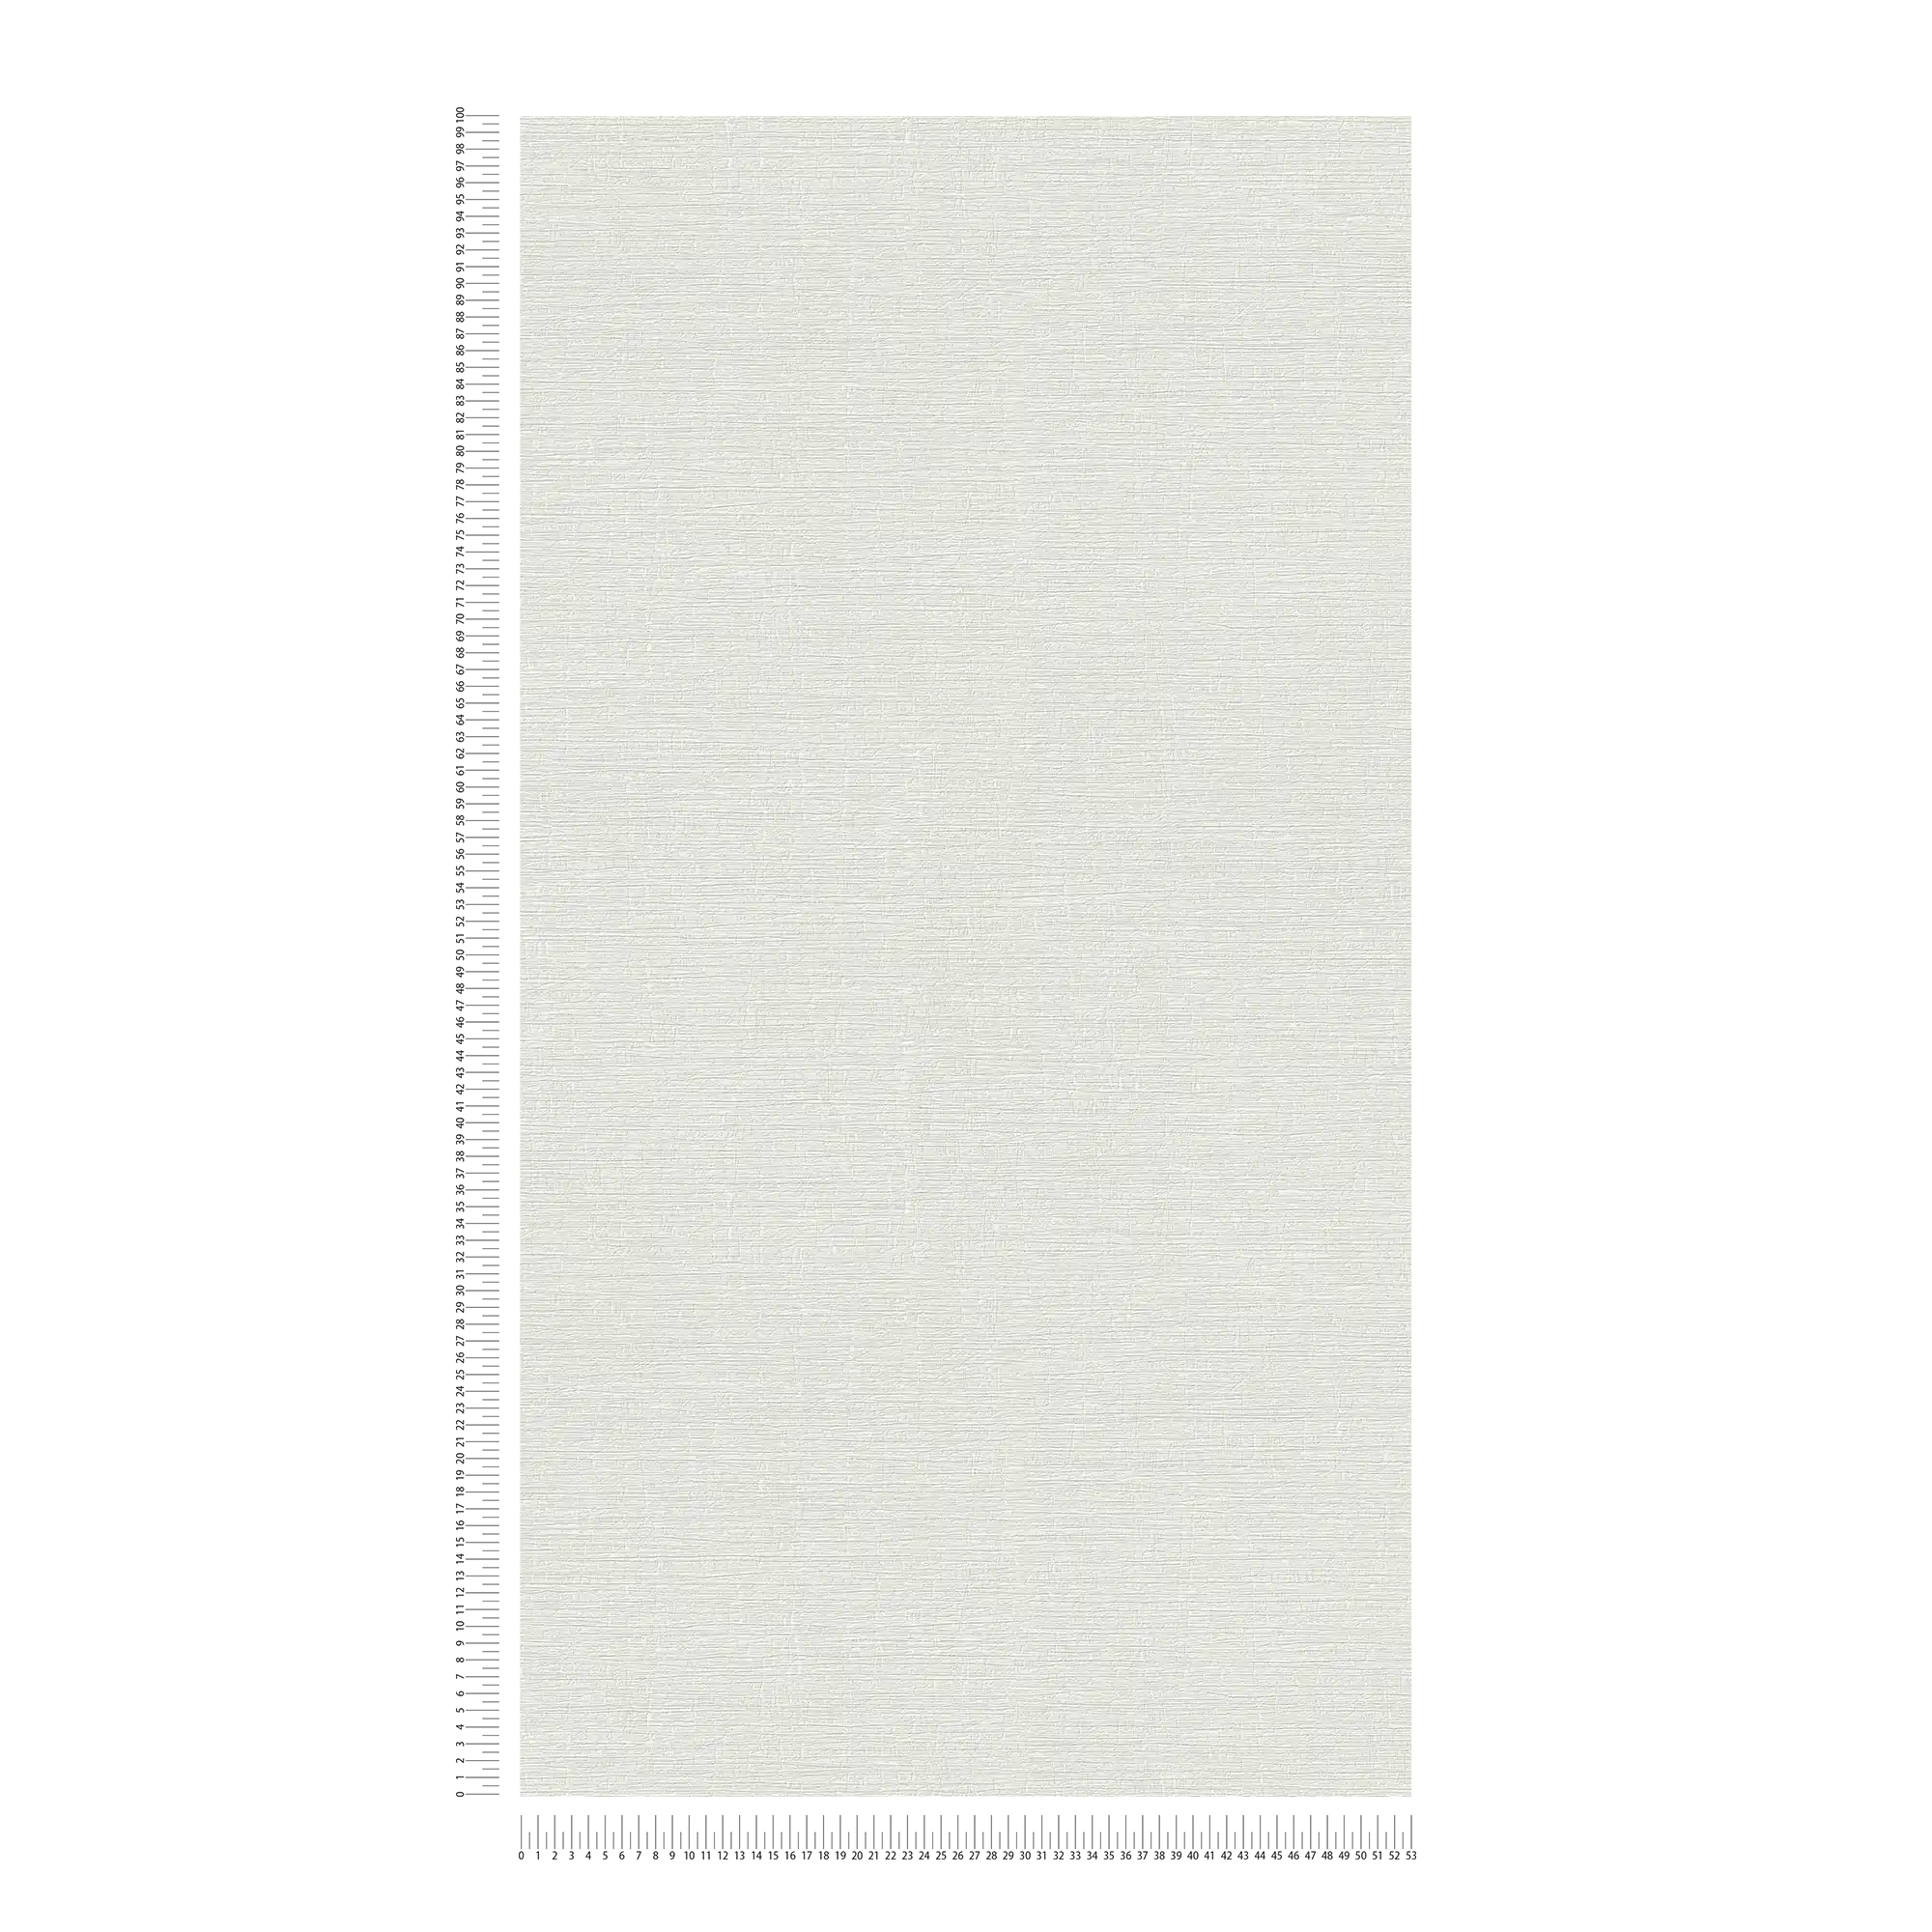             Carta da parati semplice con texture leggera - grigio
        